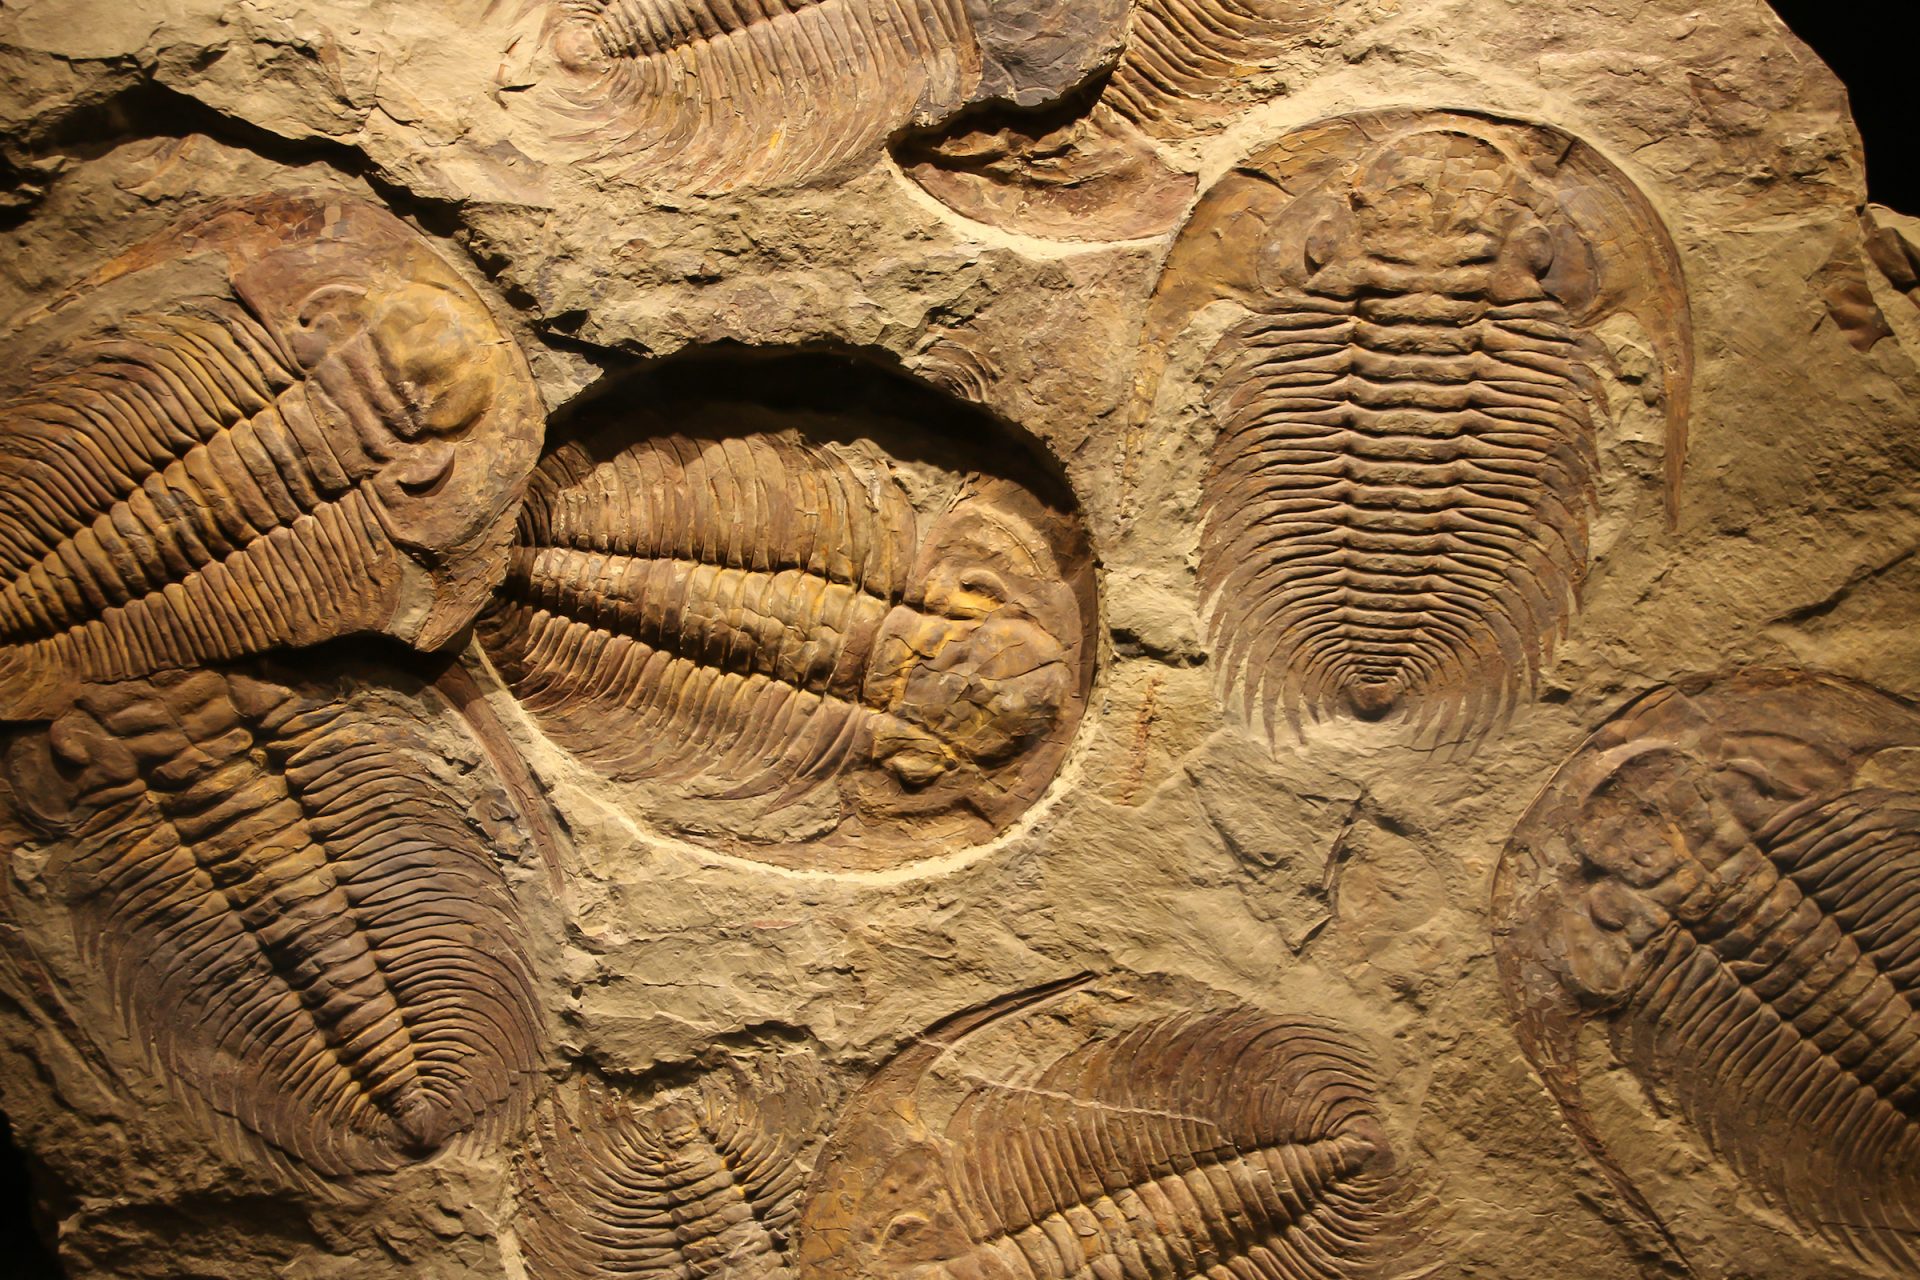 What did trilobites trudge extinct?